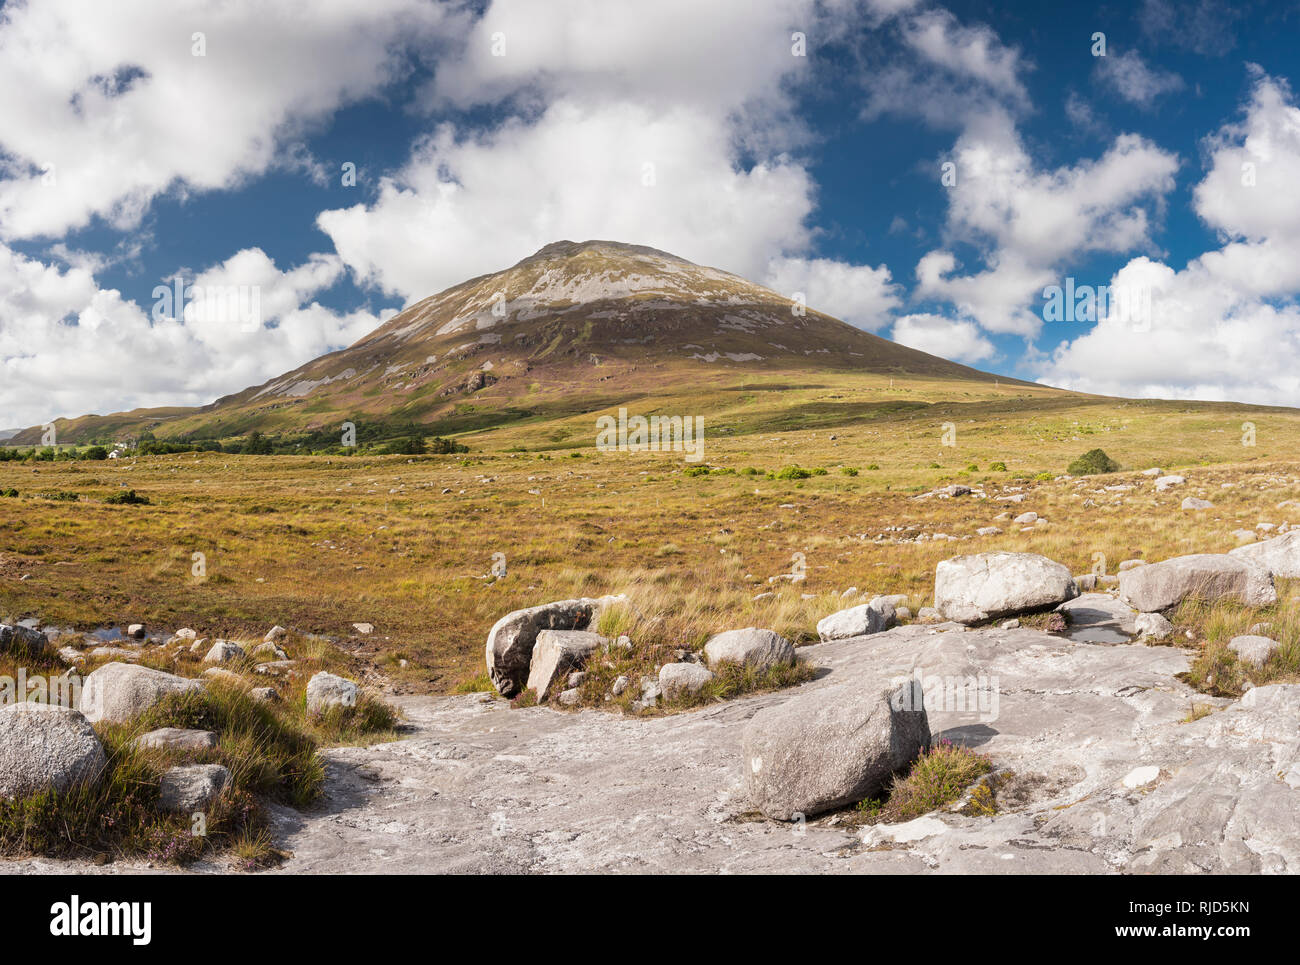 Blick auf Mount Errigal, eine von Irlands berühmtesten Berge, von der Bergspitze der Granit in der Nähe von Donegal Dunlewy, County Donegal, Irland Stockfoto